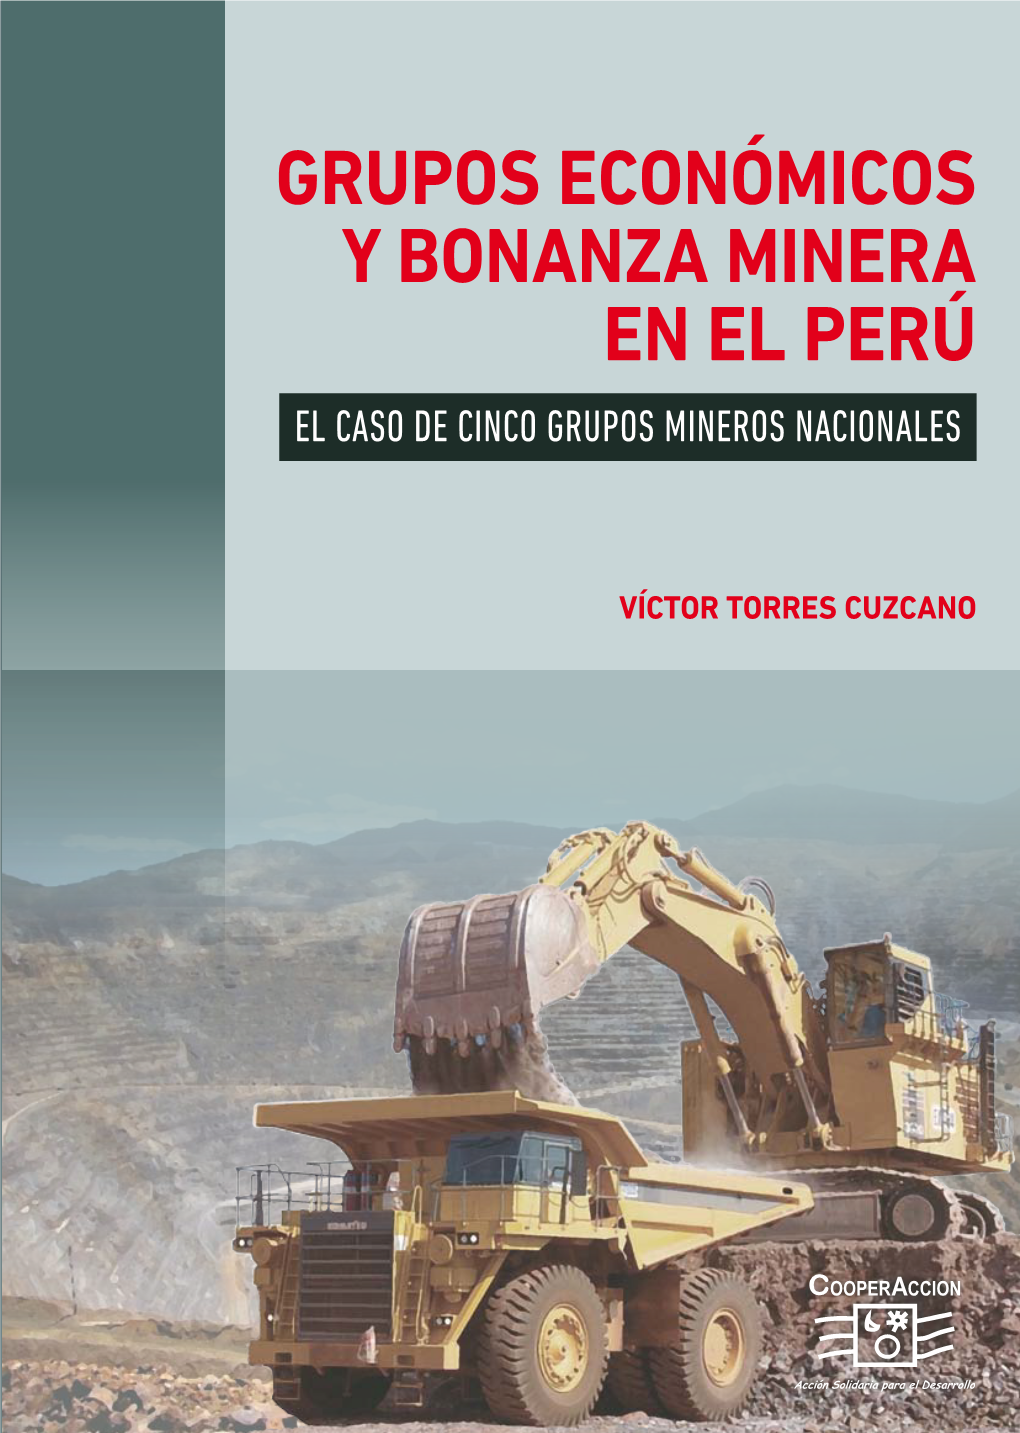 Grupos Económicos Y Bonanza Minera En El Perú Y Grupos Económicos Nacionales El Caso De Cinco Grupos Mineros